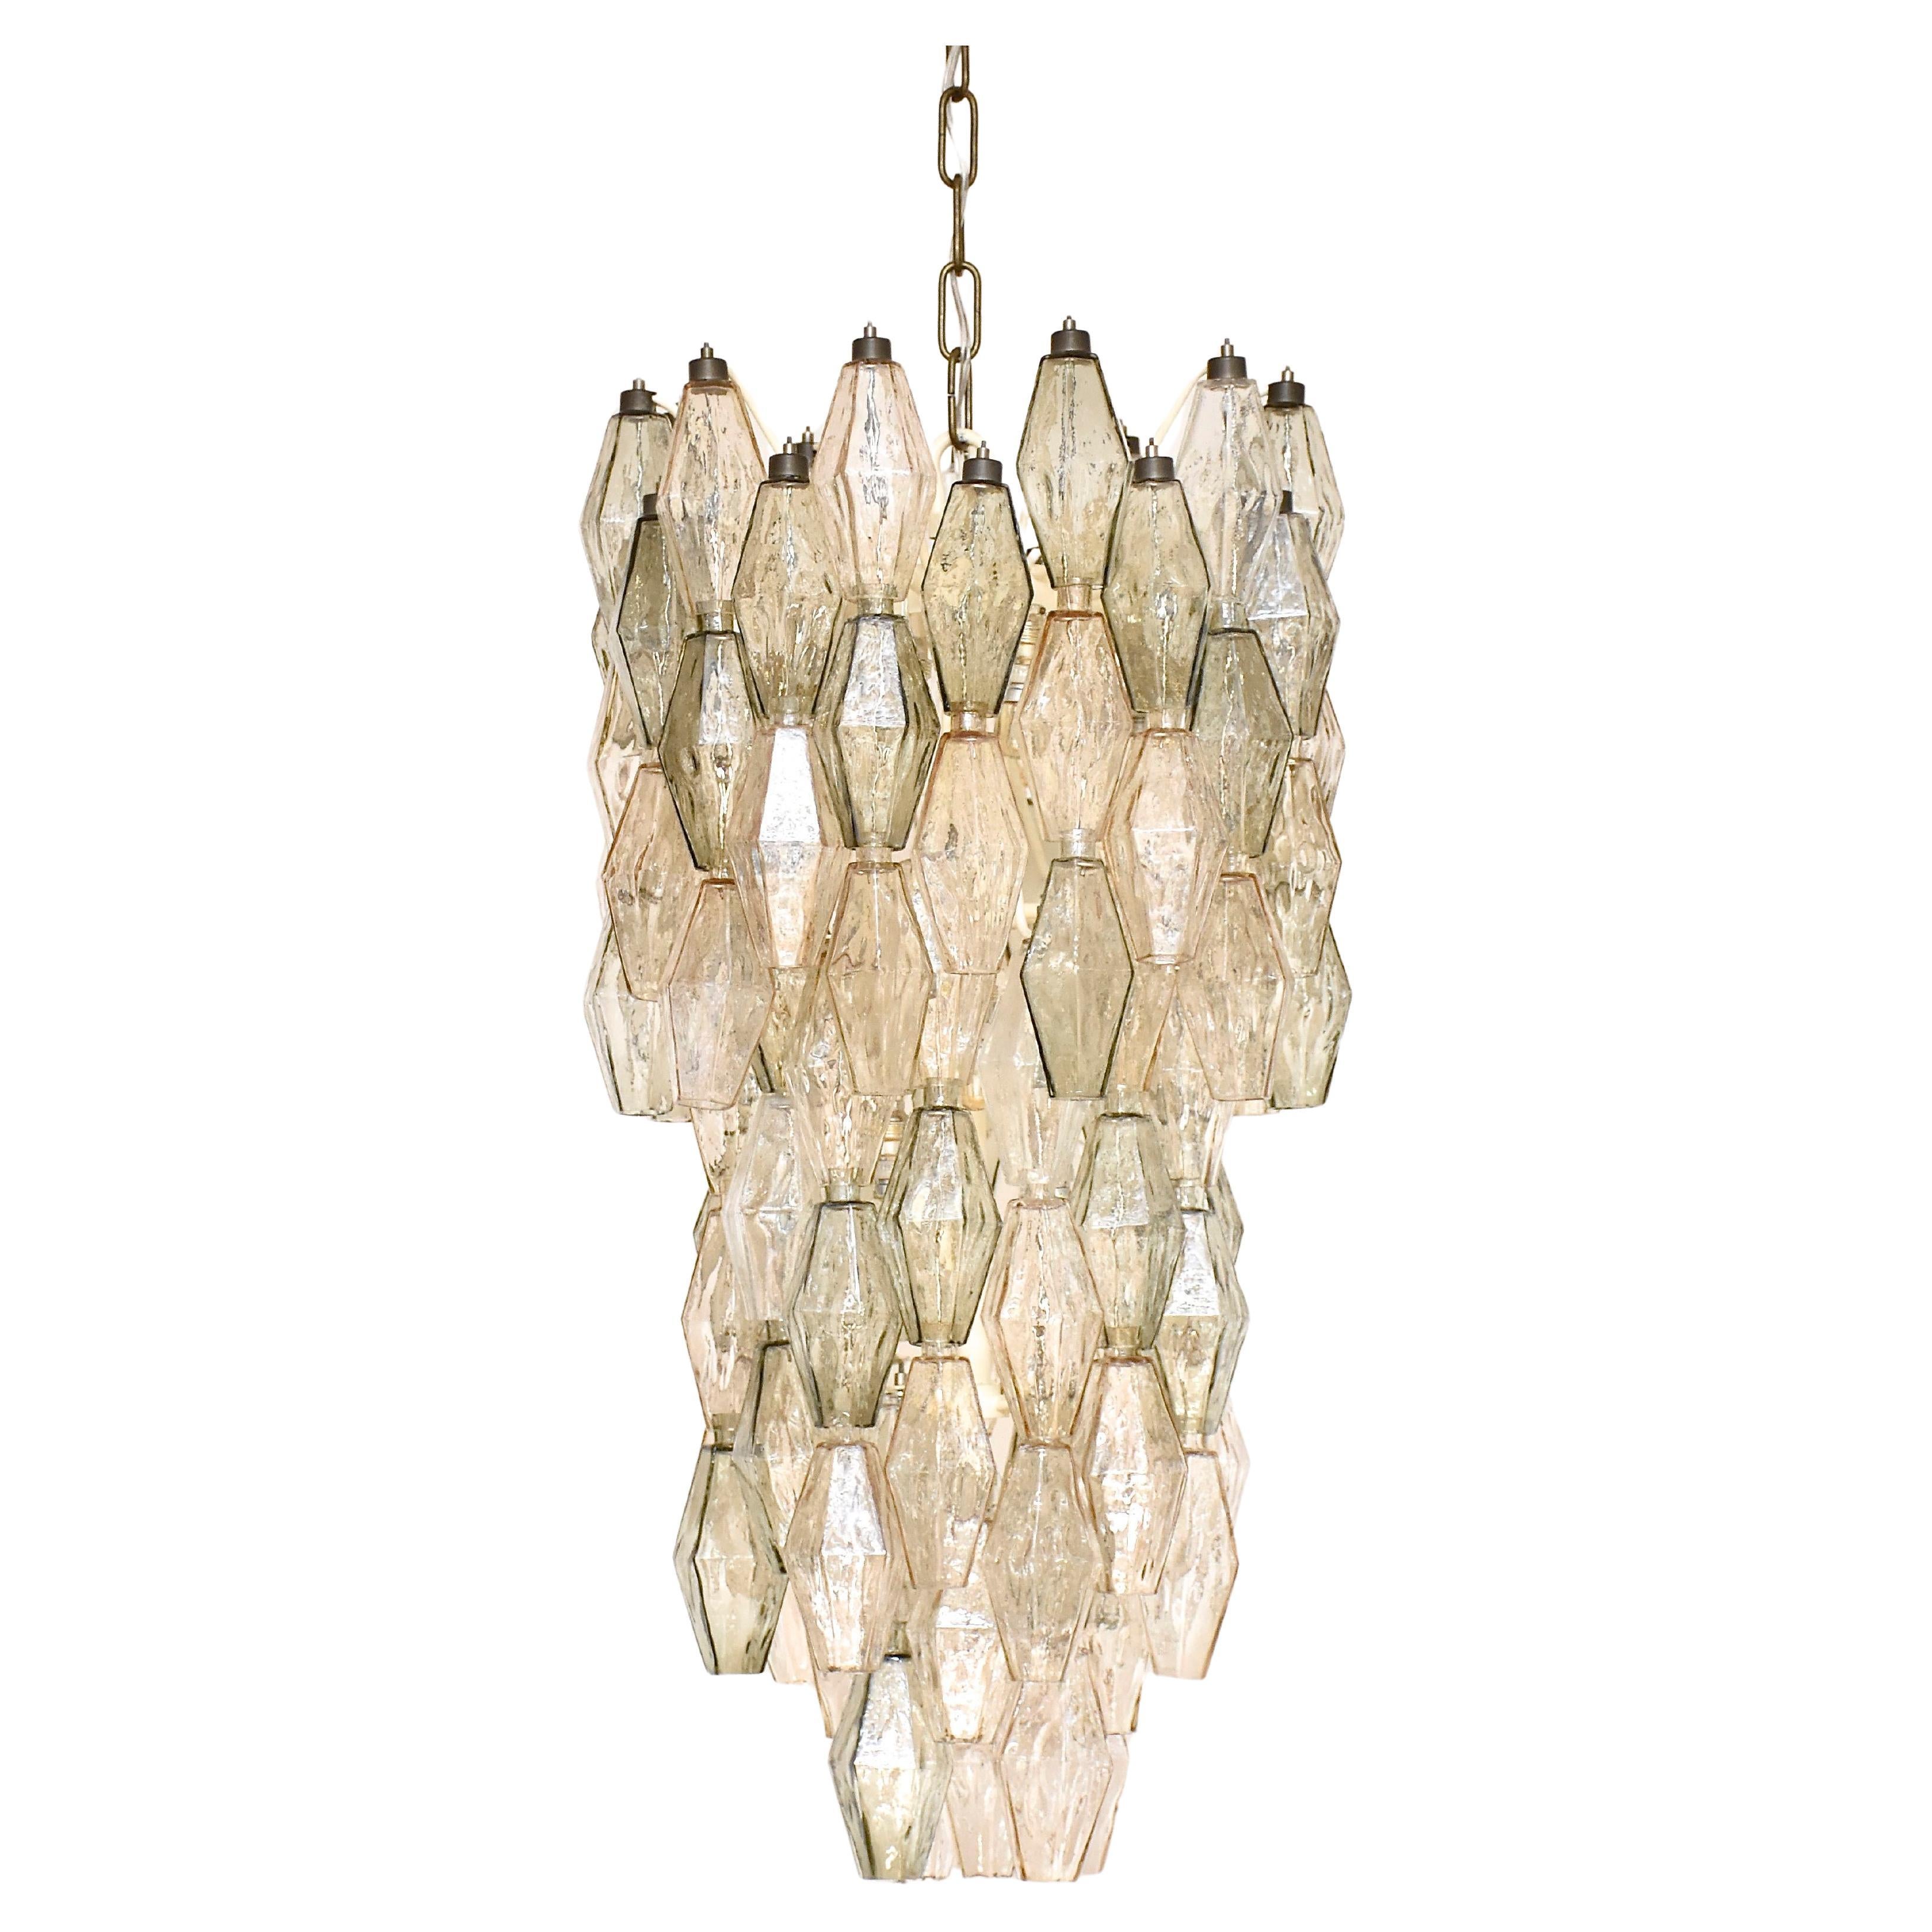 Carlo Scarpa Murano chandelier Poliedri by Venini For Sale